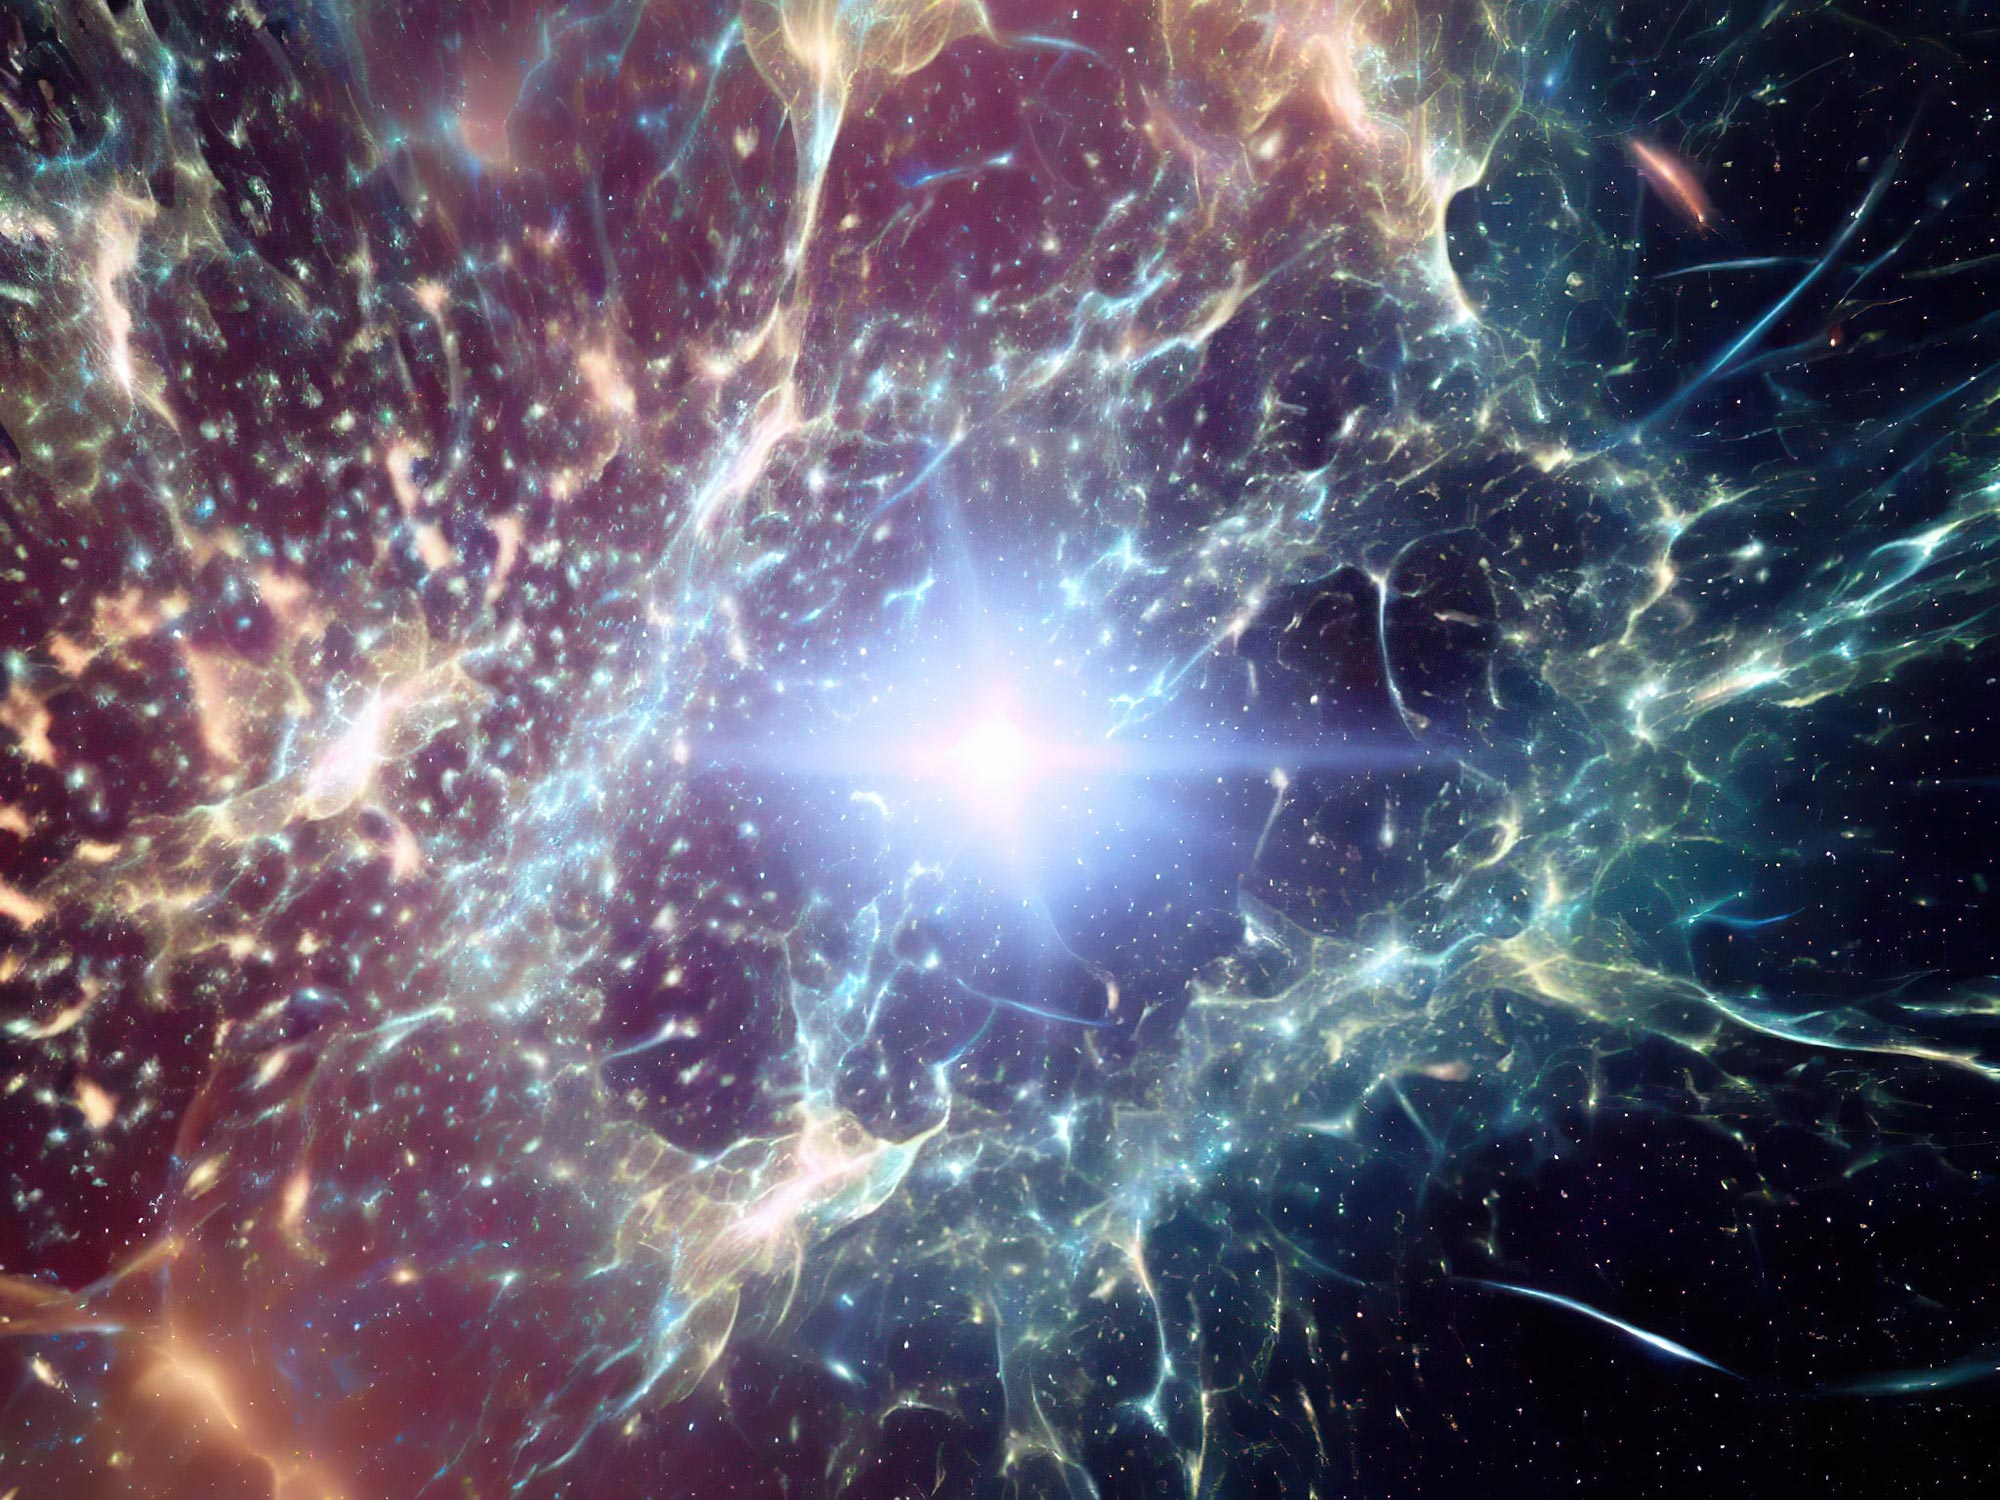 El Telescopio Espacial Webb muestra un universo primitivo agrietado con ráfagas de formación estelar